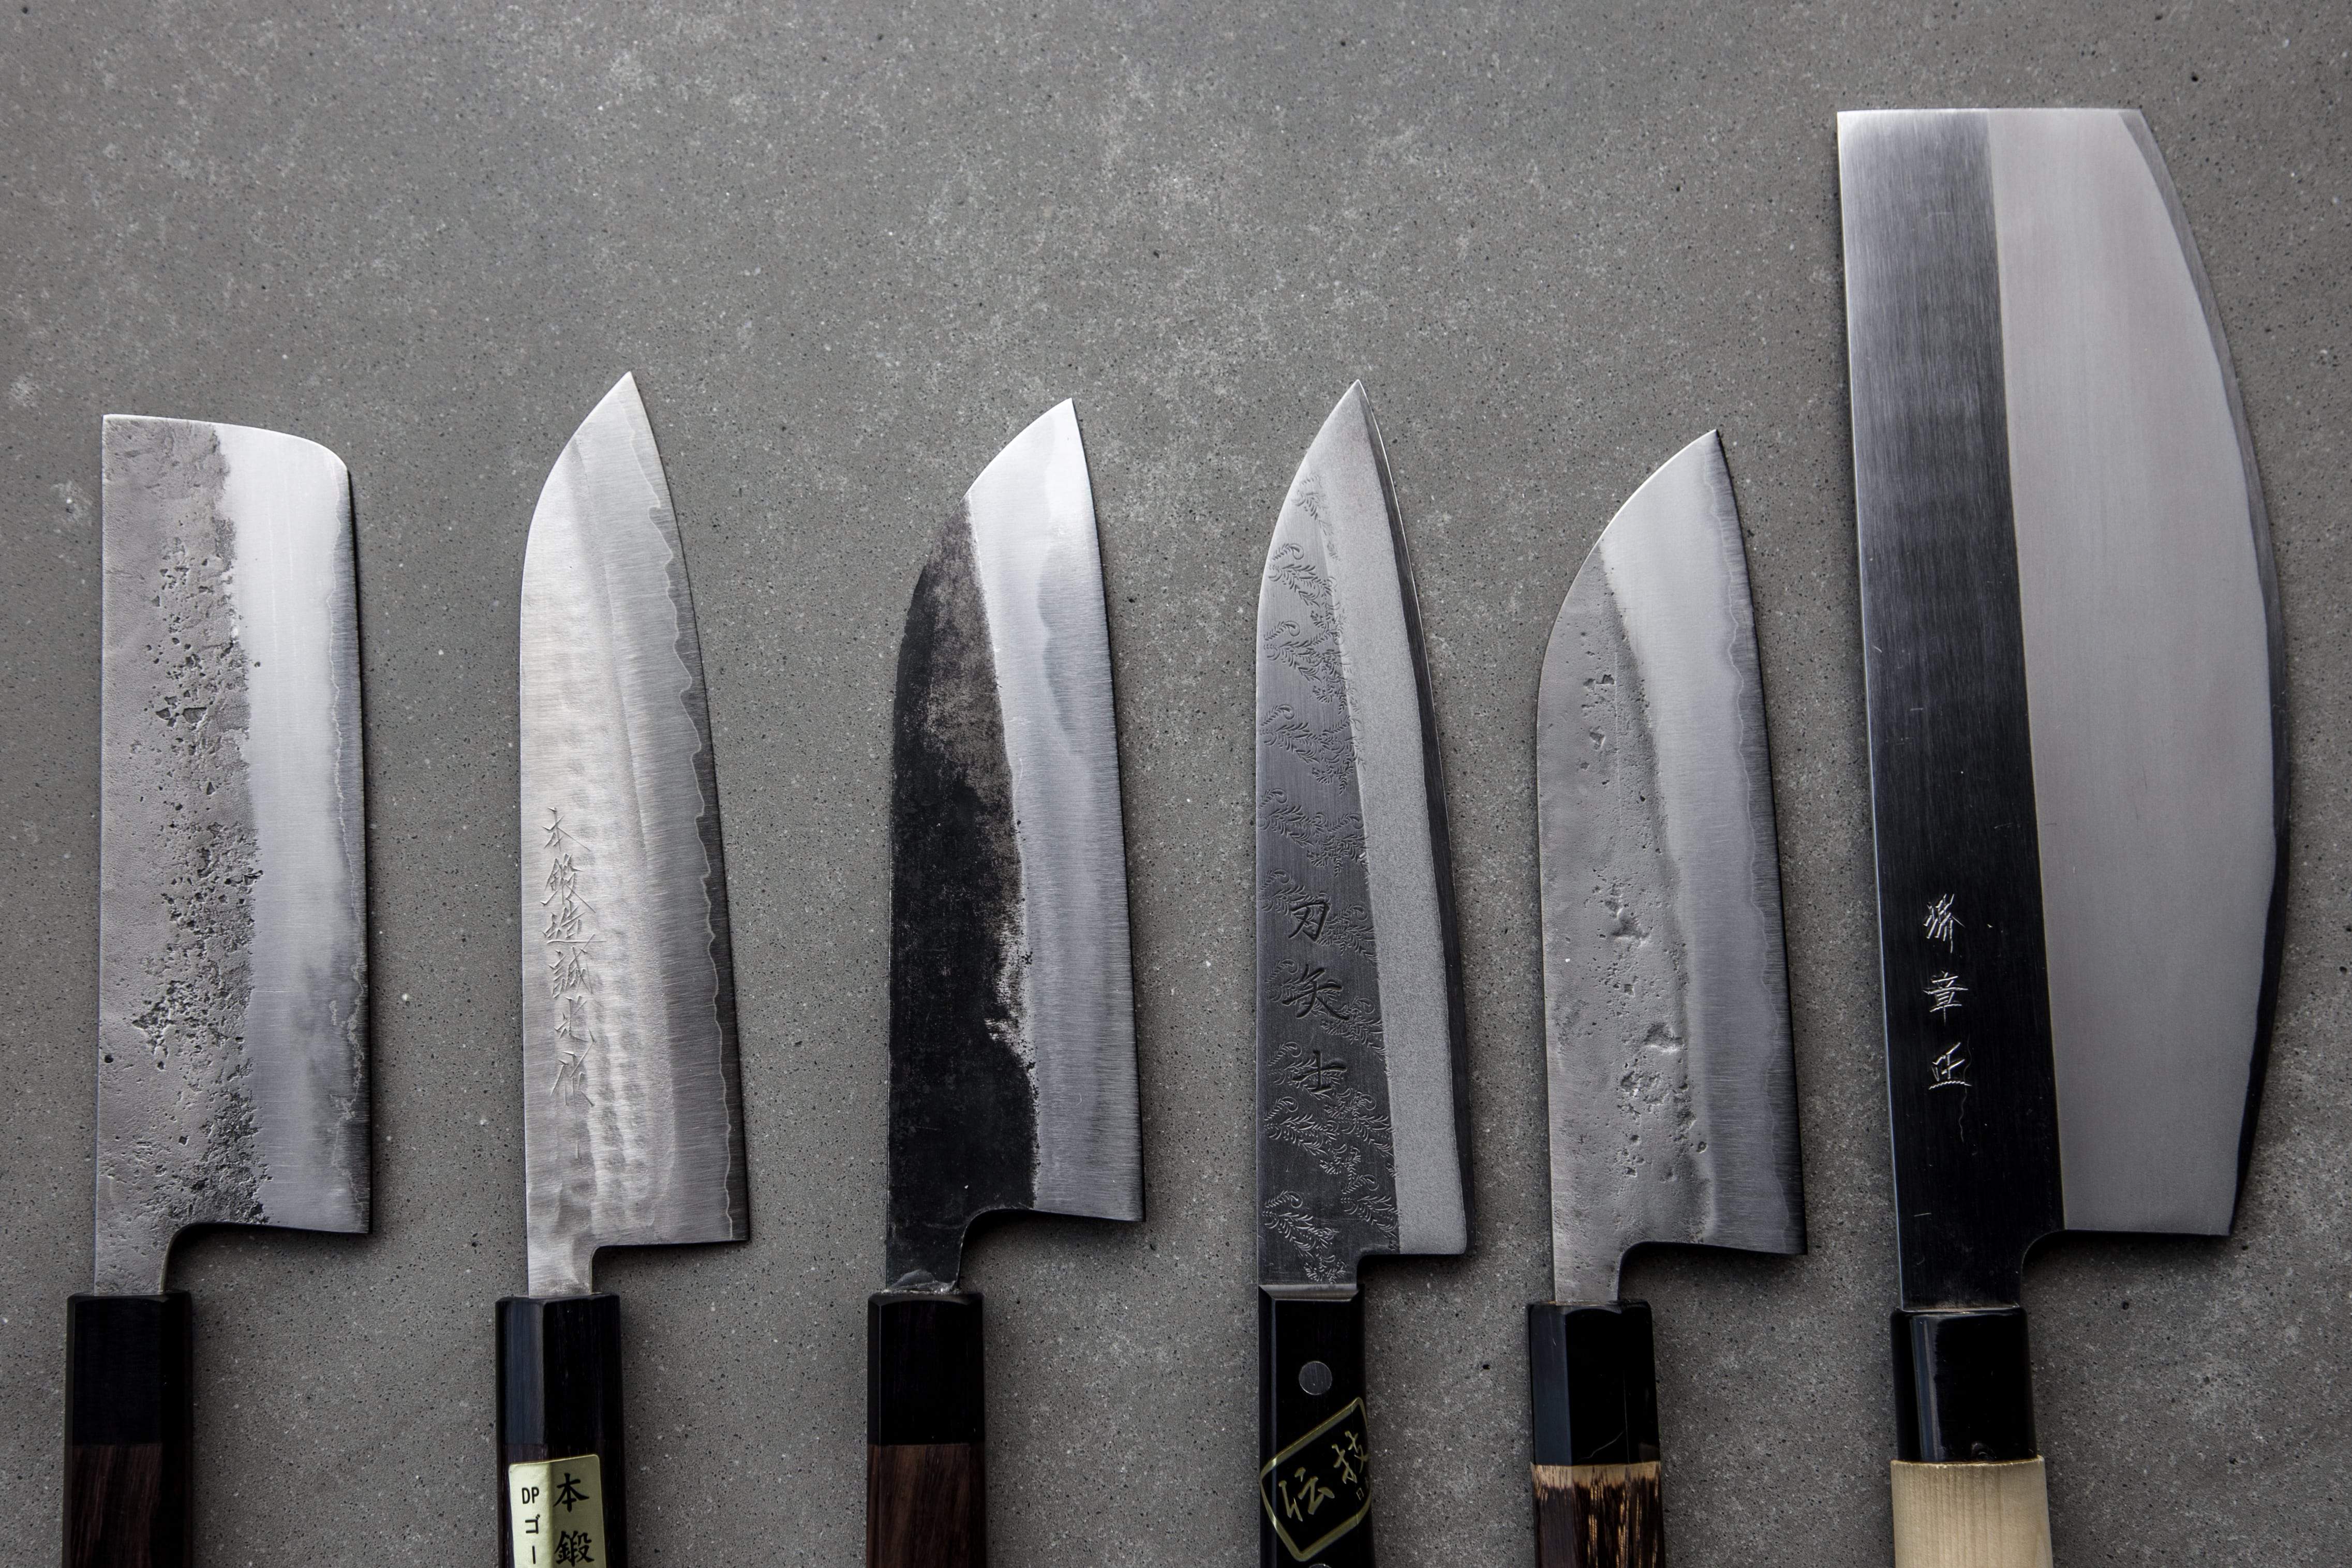 Set de 3 couteaux en céramique noire Top Cook